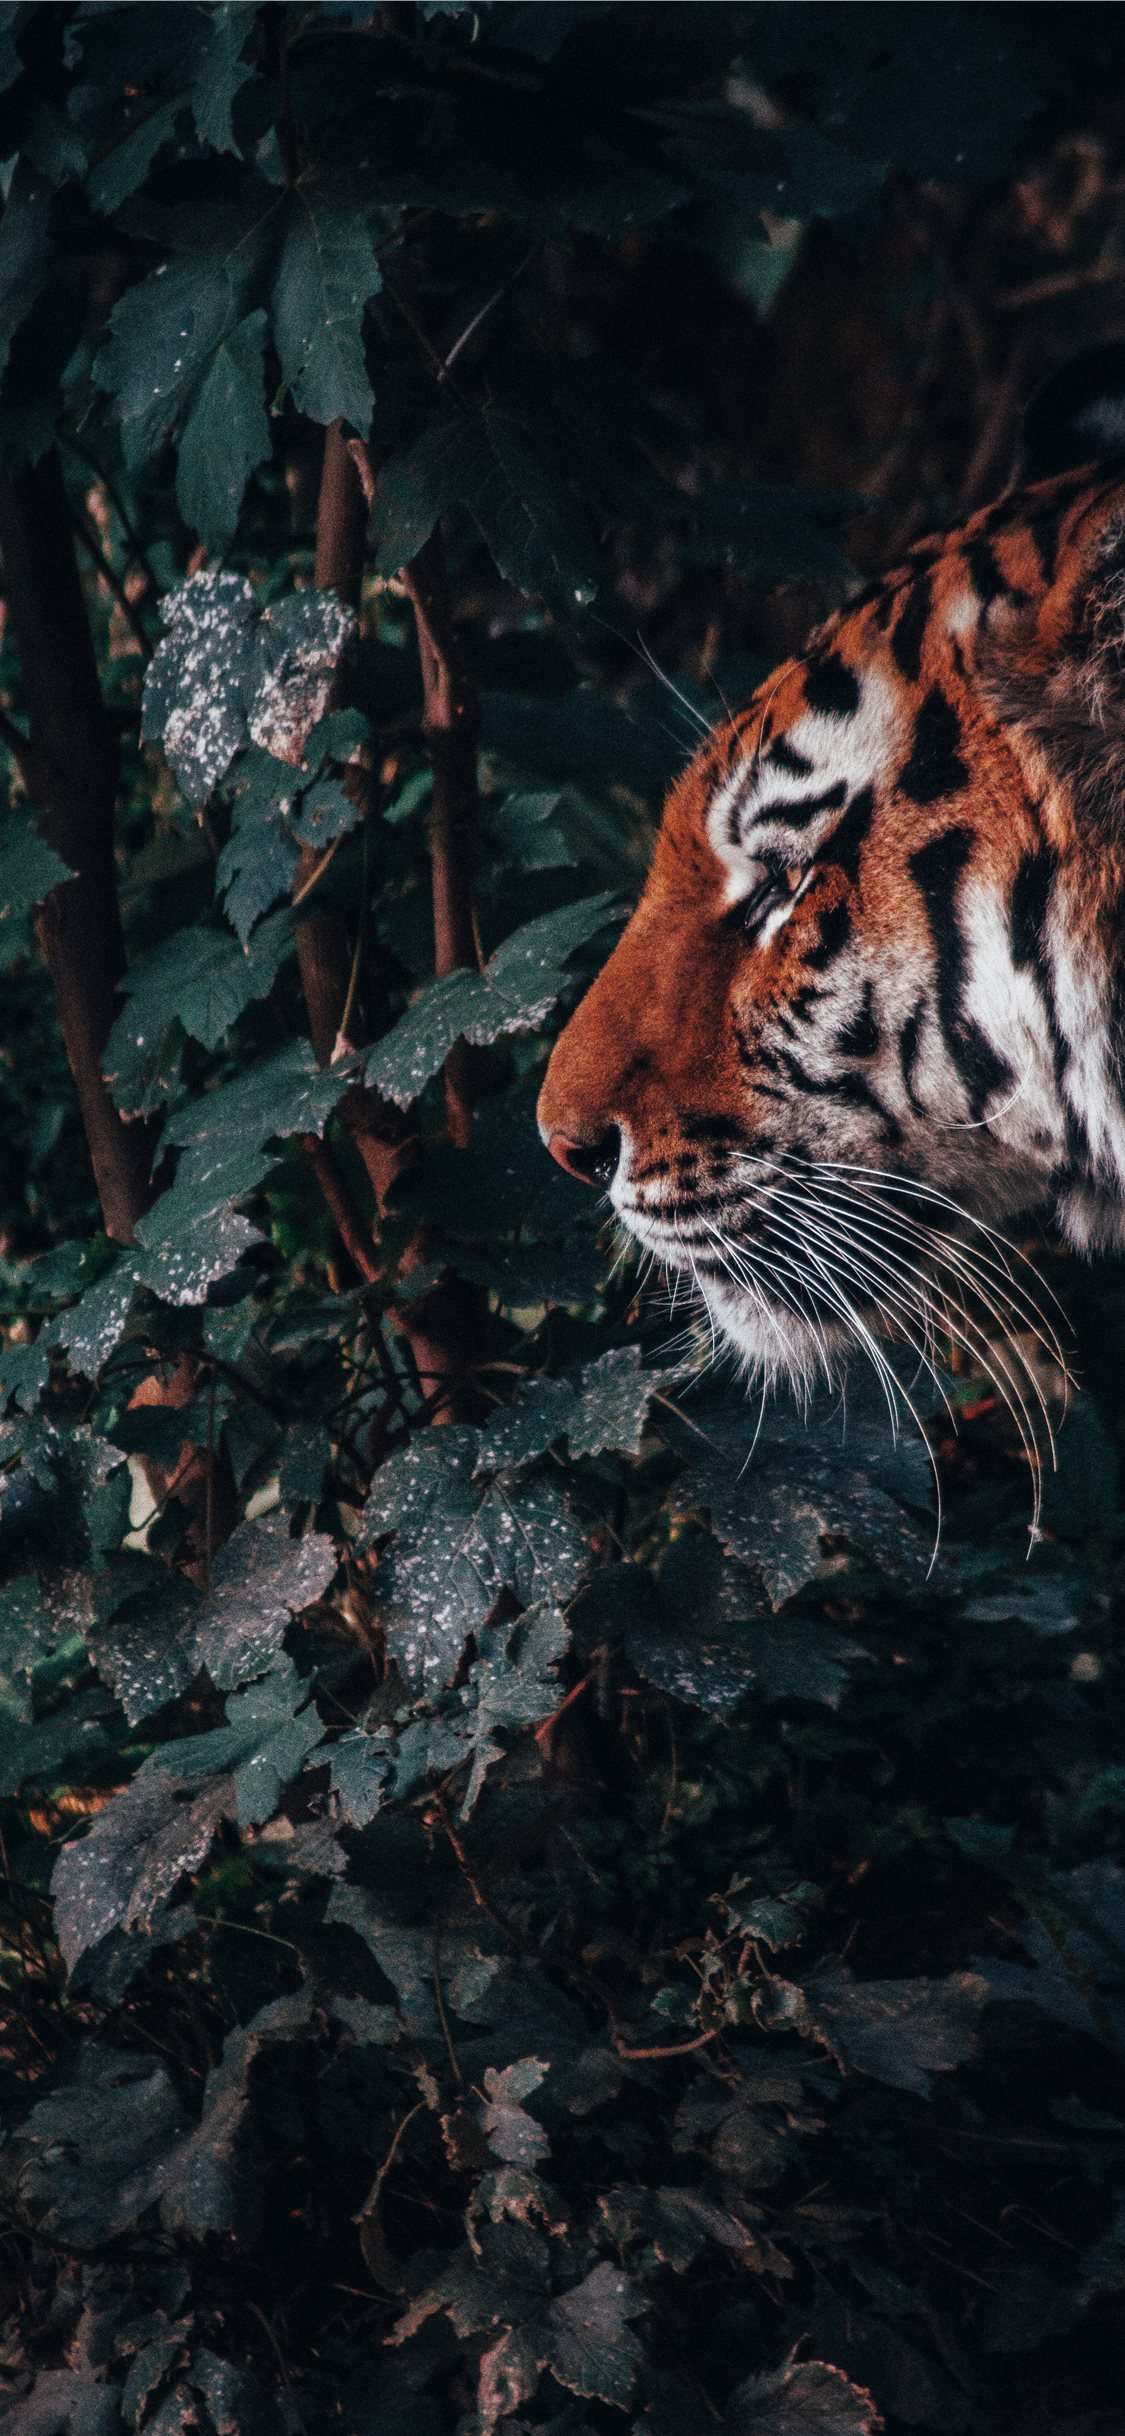 animal wallpaper hd,bengal tiger,felidae,wildlife,terrestrial animal,tiger